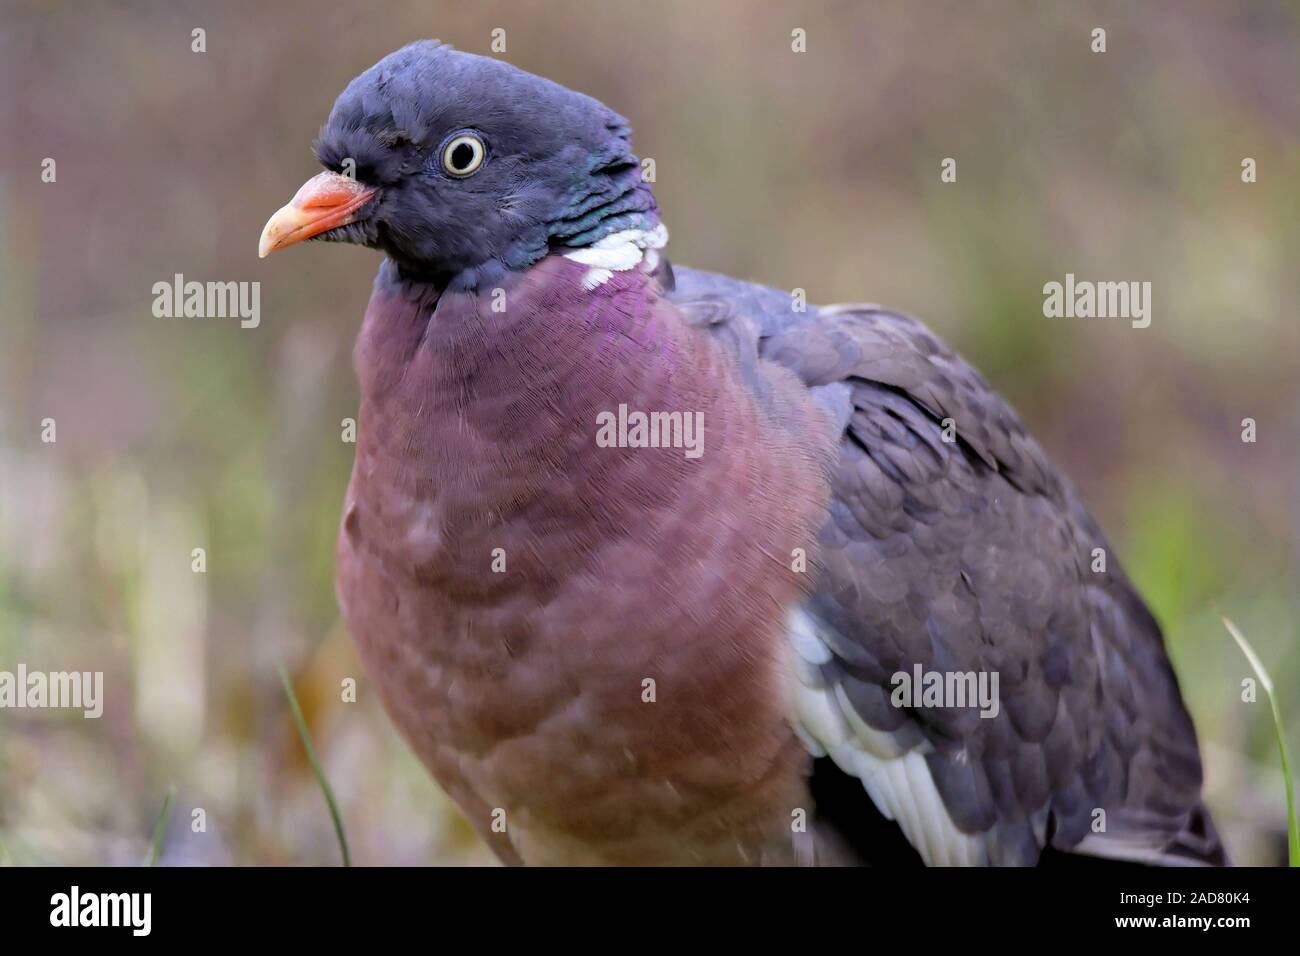 Common wood pigeon Stock Photo